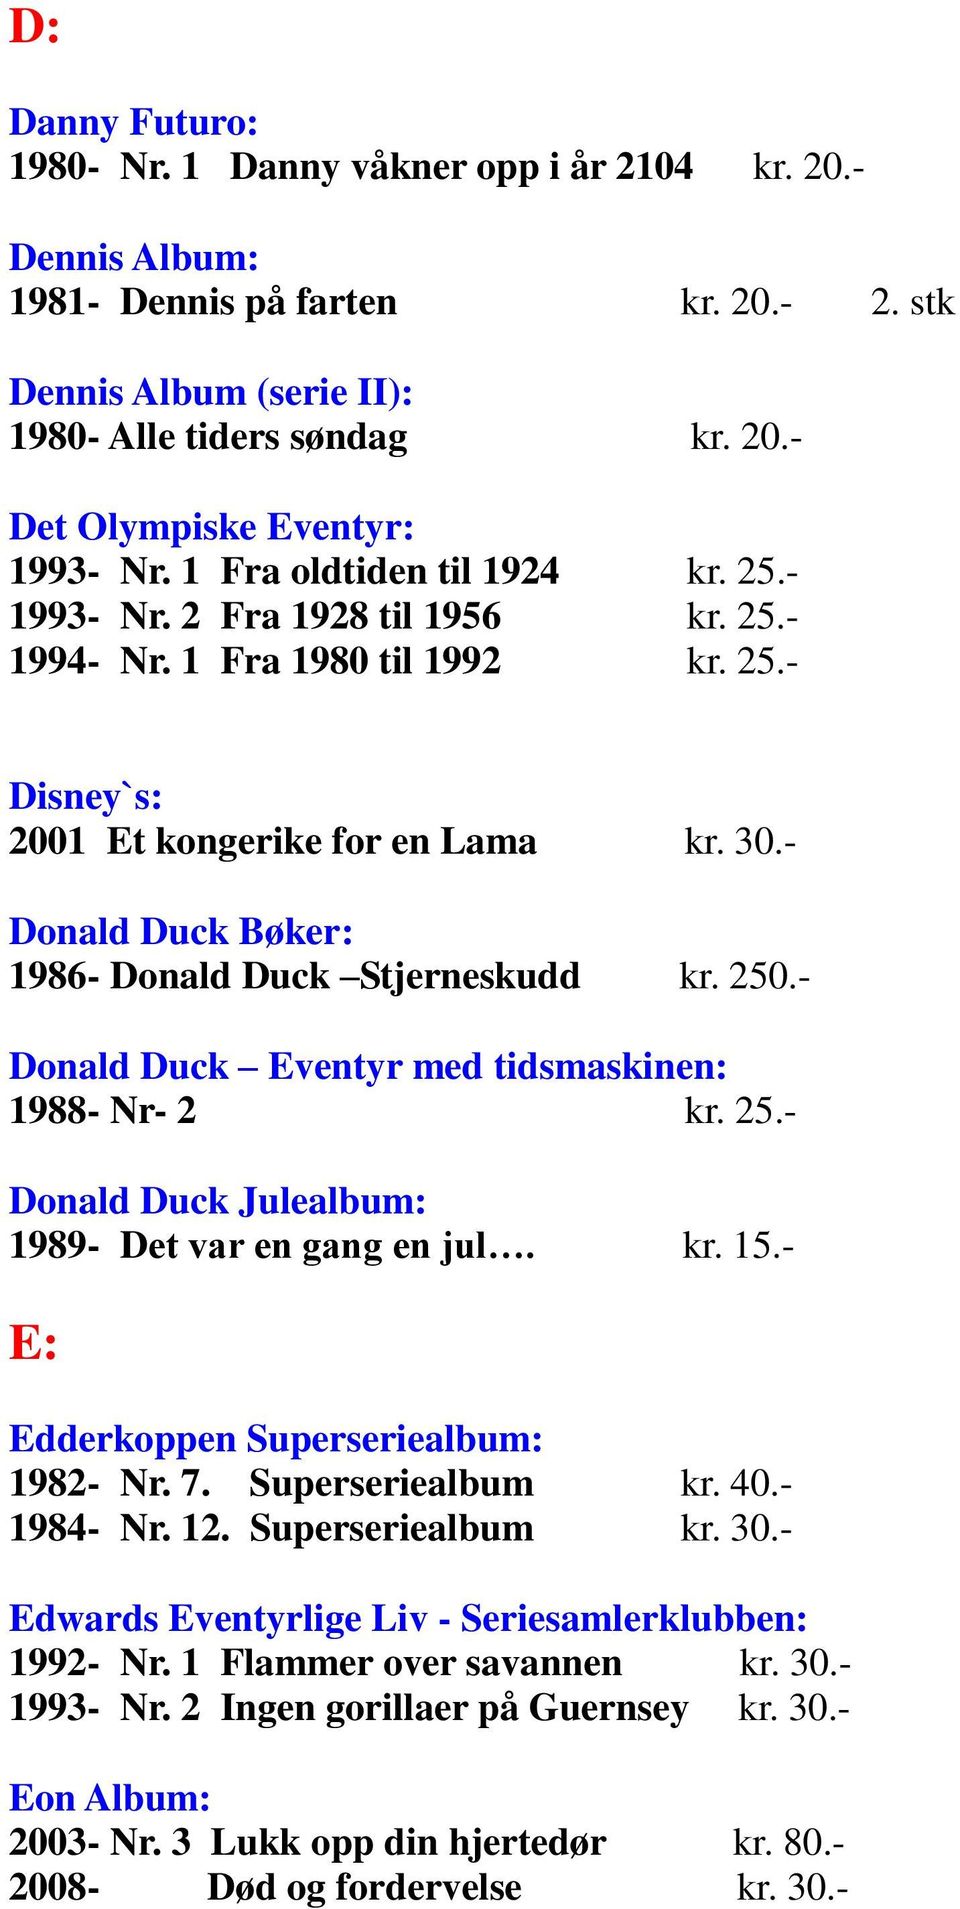 - Donald Duck Bøker: 1986- Donald Duck Stjerneskudd kr. 250.- Donald Duck Eventyr med tidsmaskinen: 1988- Nr- 2 kr. 25.- Donald Duck Julealbum: 1989- Det var en gang en jul. kr. 15.